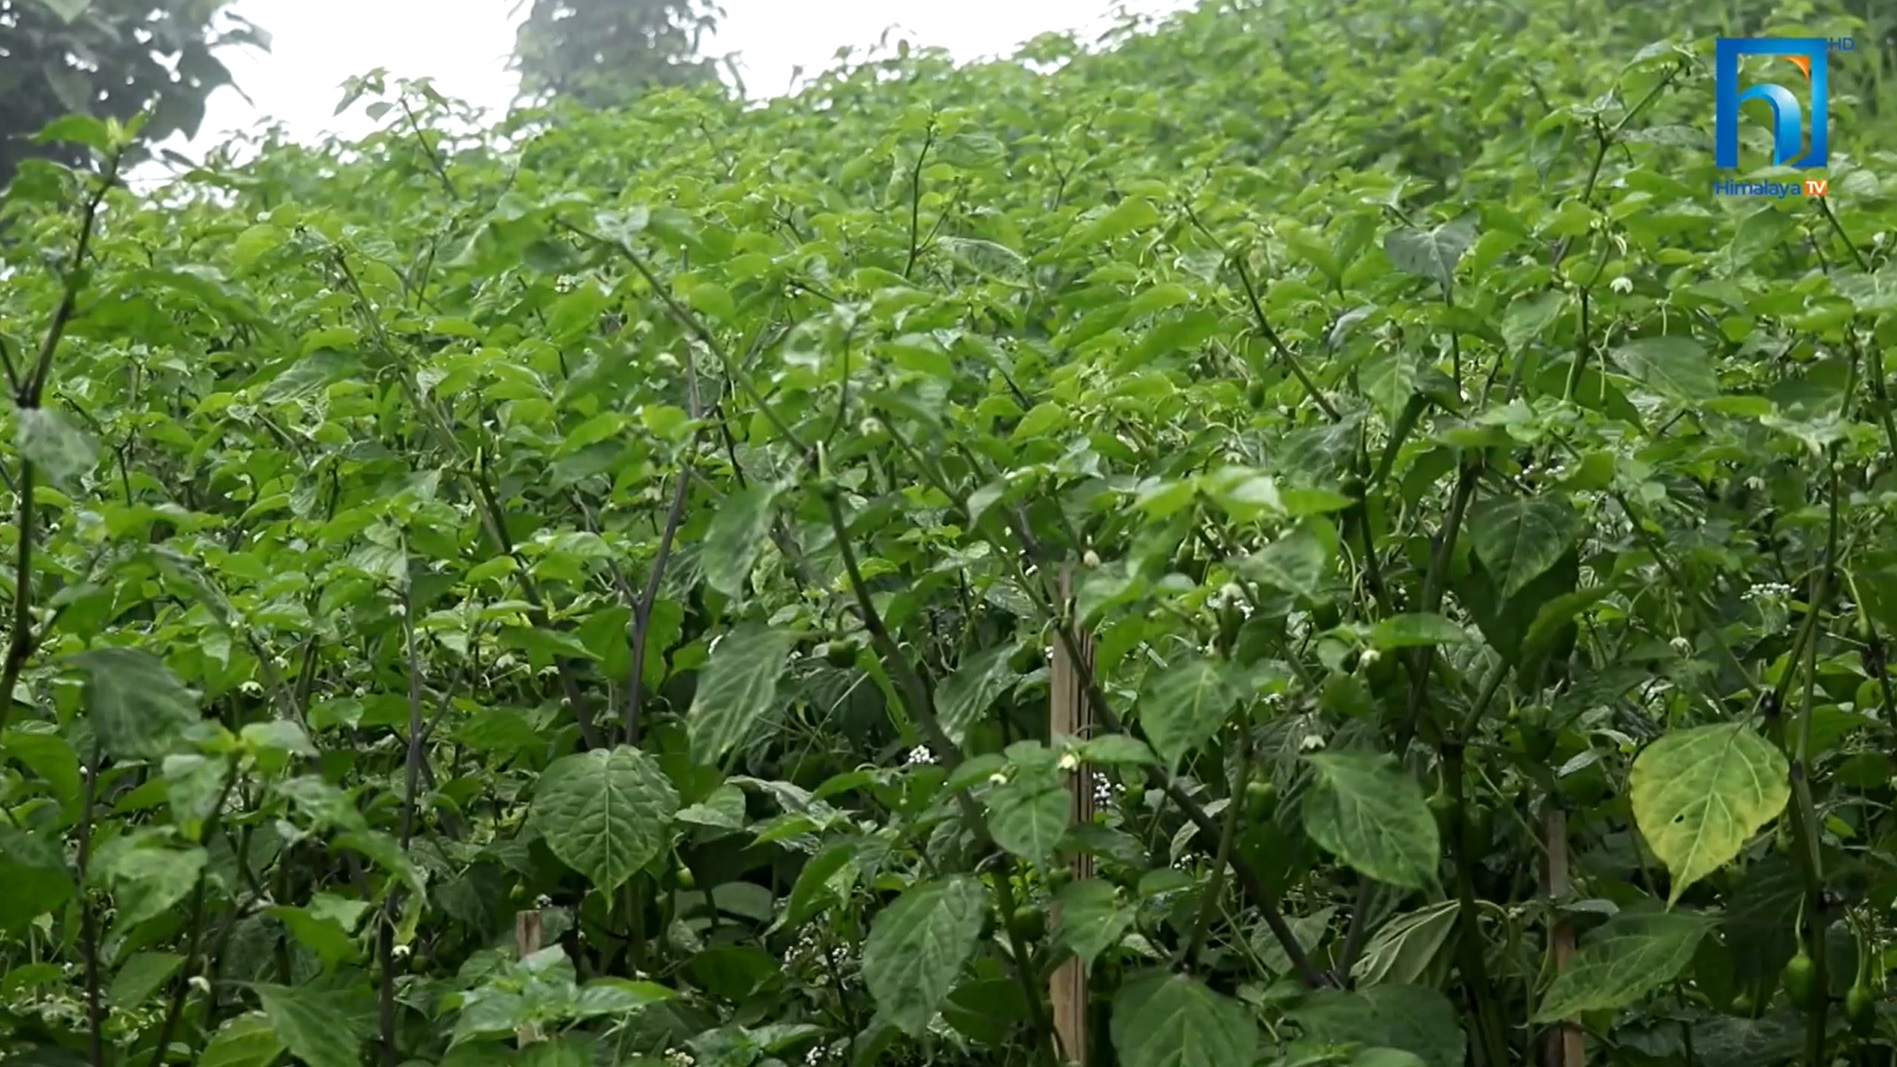 अकबरे खुर्सानी खेतीमा इलामेली किसानको यस्तो आकर्षण (भिडियो रिपोर्टसहित)